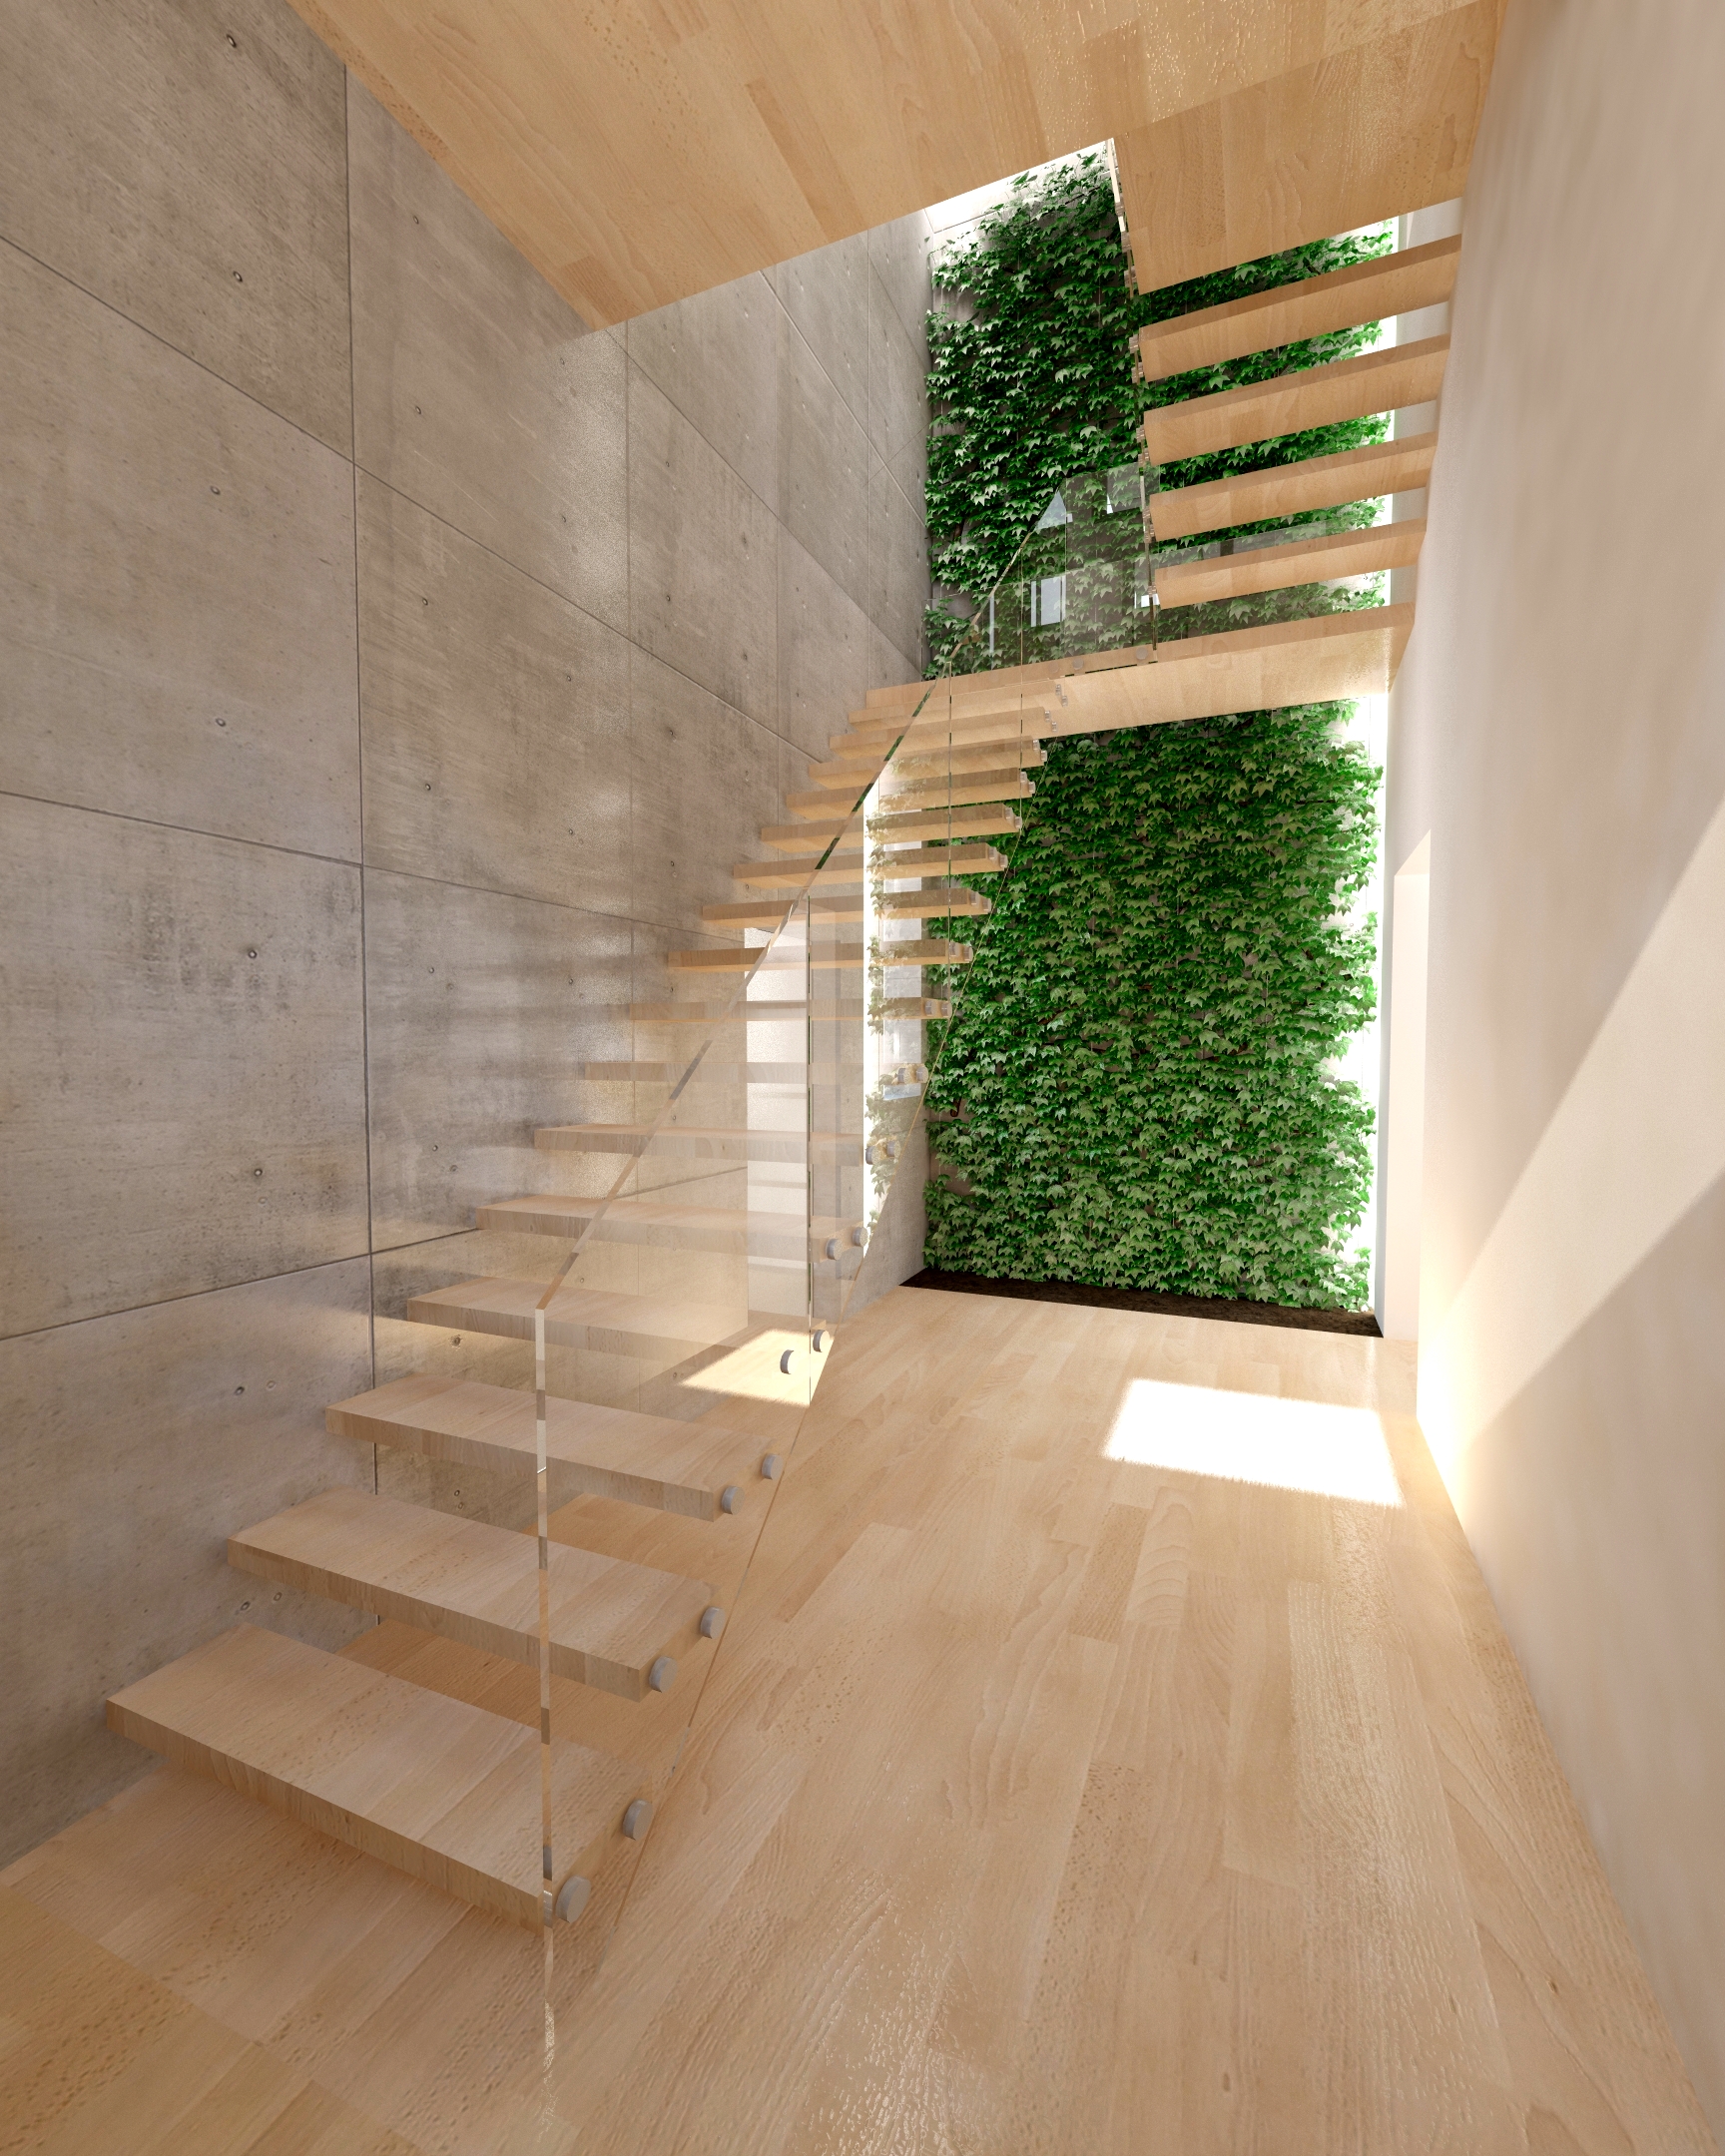 Növényfal- látványterv / Vertical garden - architectural visualization